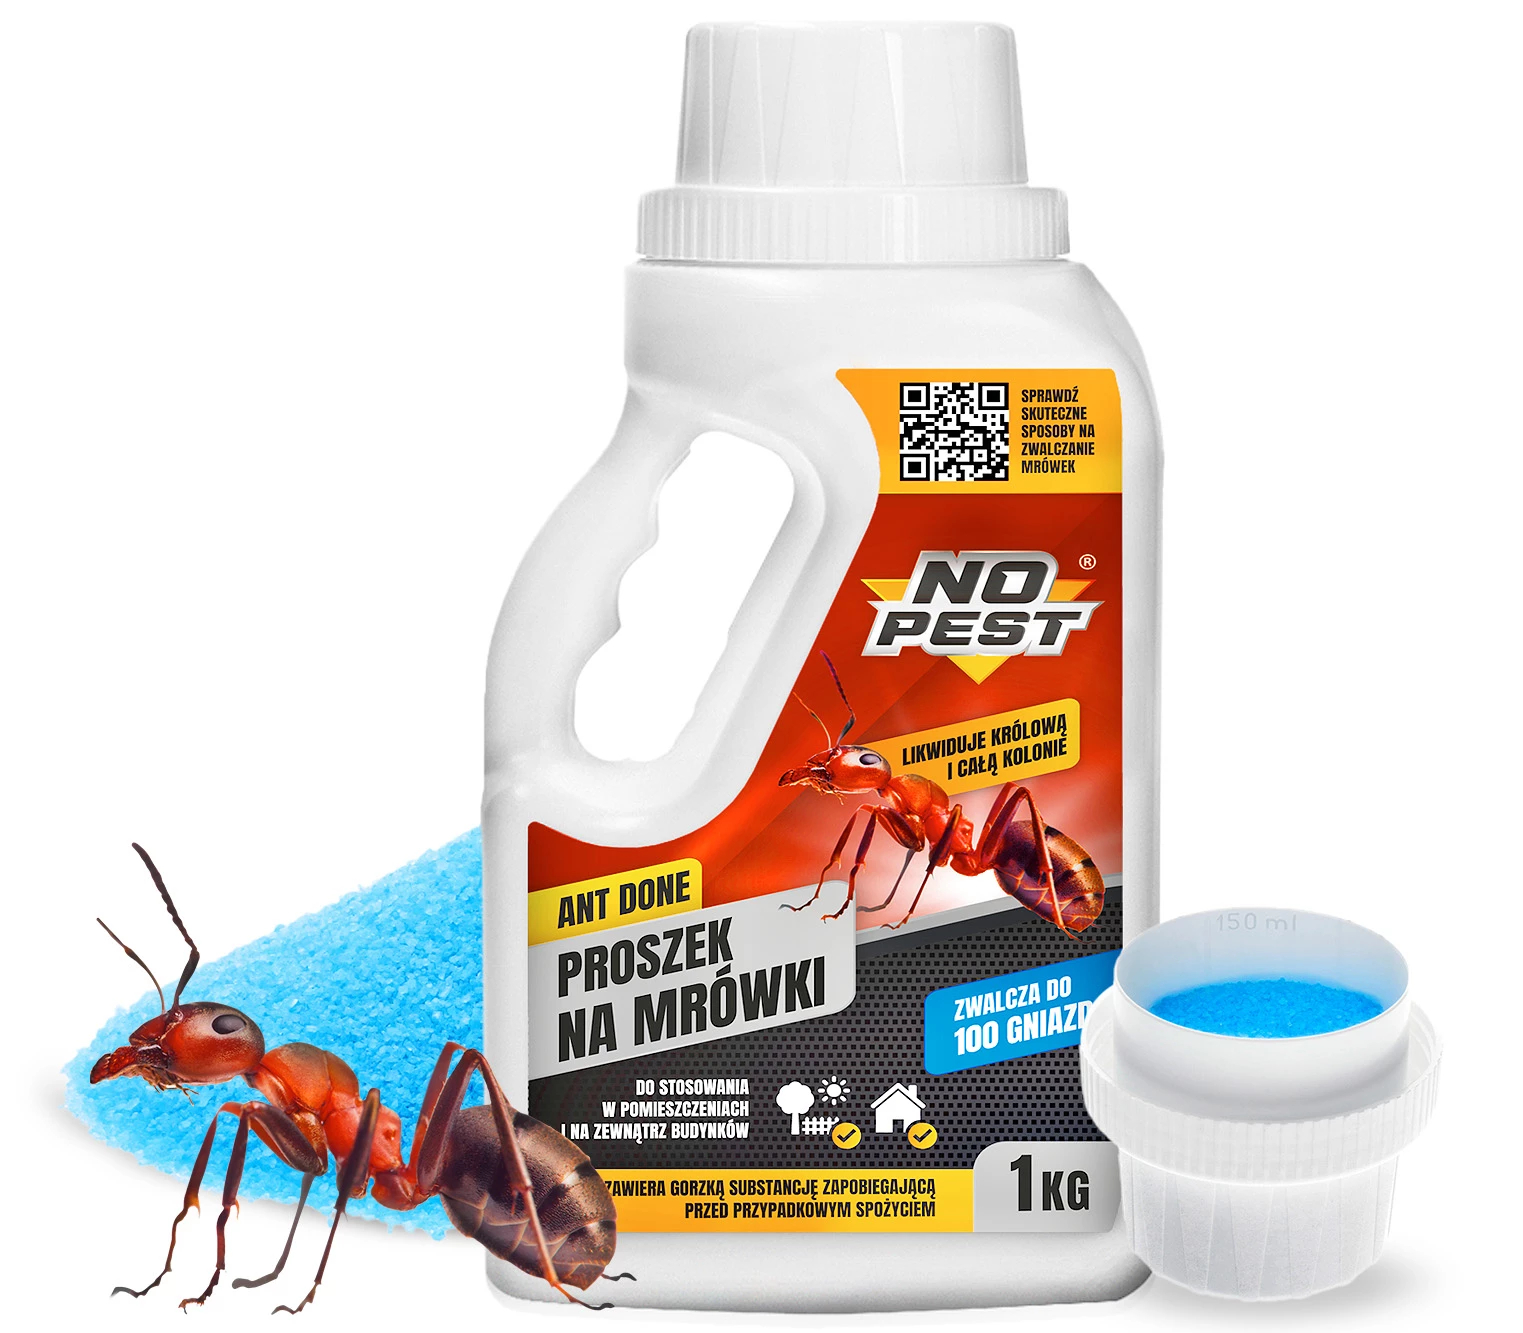 proszek na mrówki, proszek na mrówki bros, bros na mrówki, no pest na mrówki, proszek na mrówki no pest, proszek na mrówki no pest cena, trutka na mrówki, proszek do zwalczania mrówek, proszek zwalczający mrówki, preparat na mrówki, środek na mrówki